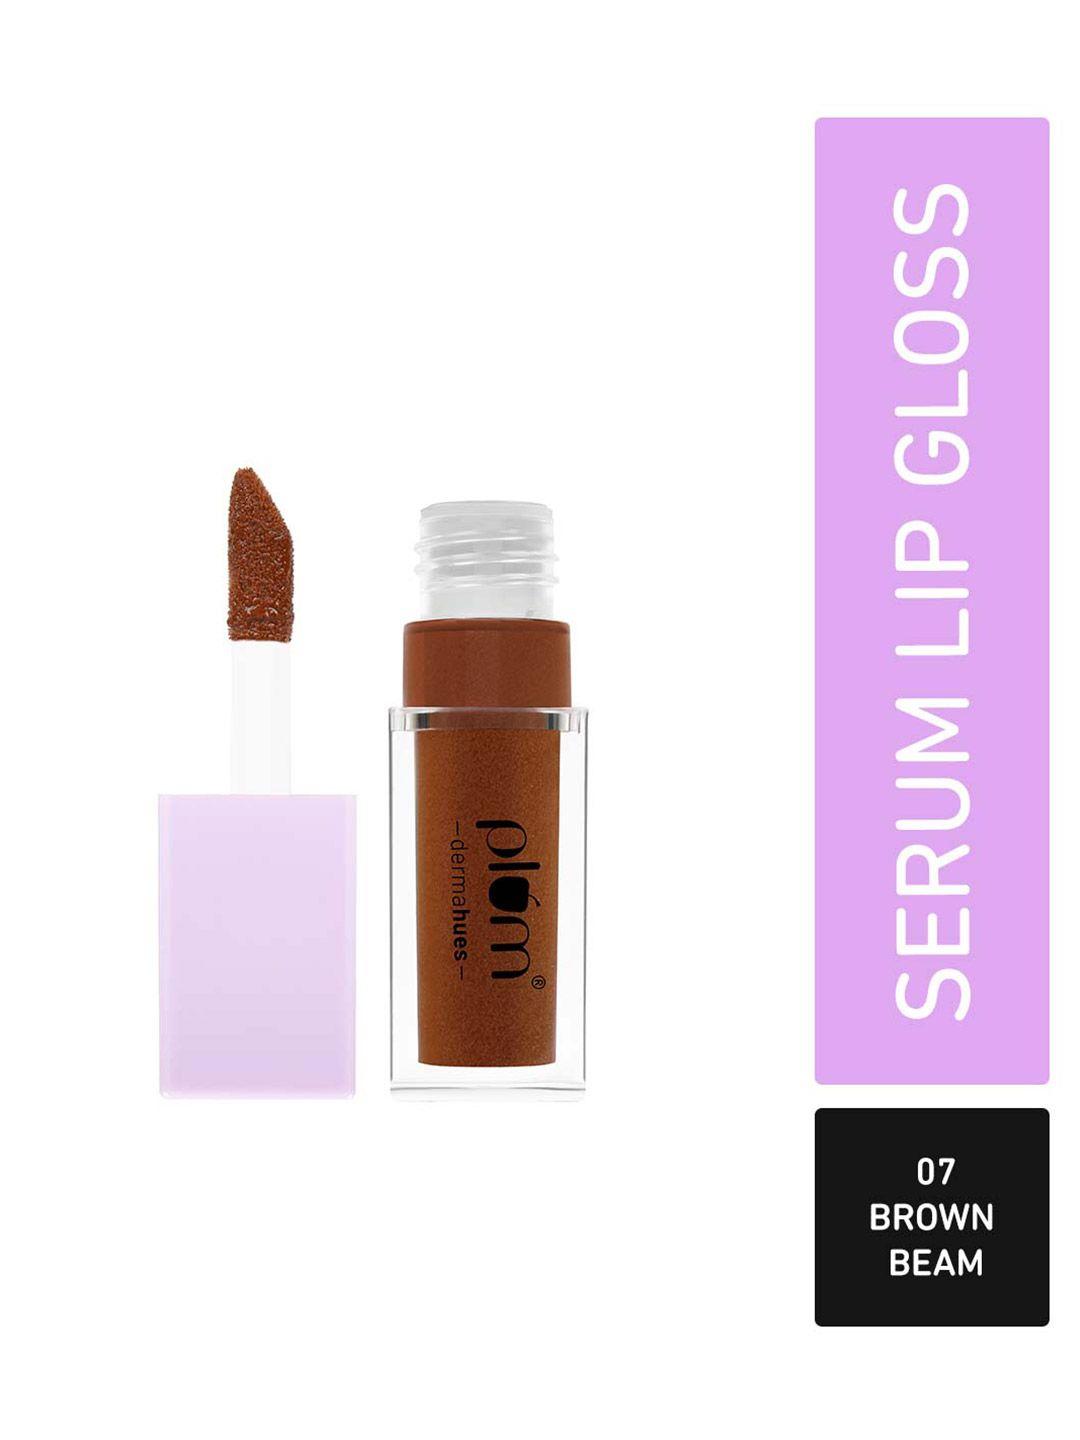 plum keep it glossy highly pigmented serum lip gloss - brown beam 07